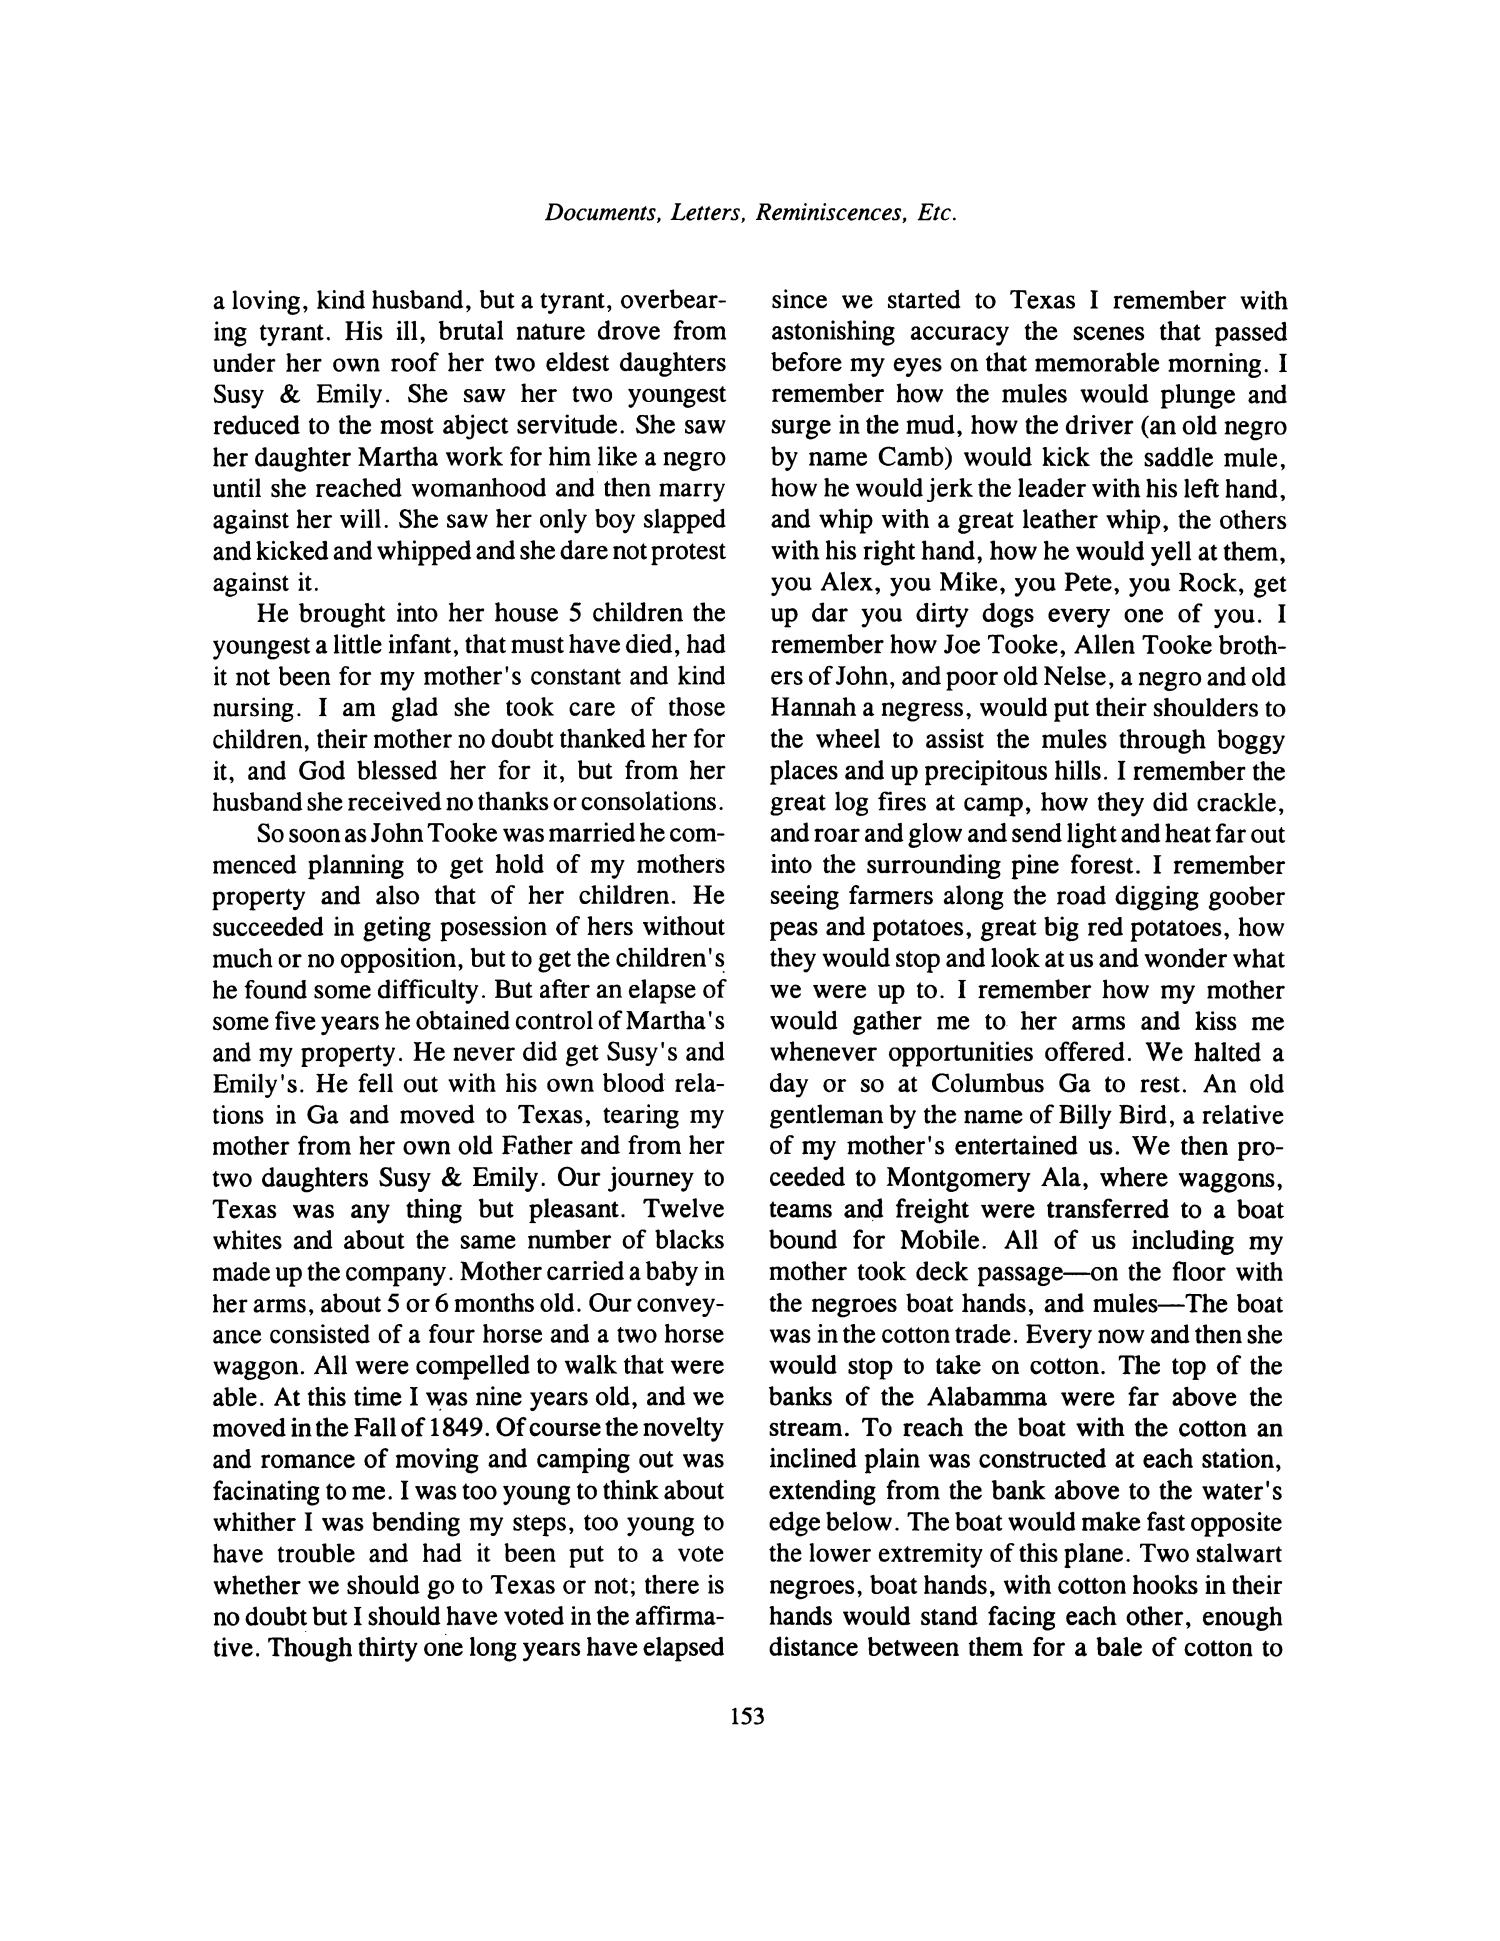 Nesbitt Memorial Library Journal, Volume 6, Number 3, September 1996
                                                
                                                    153
                                                